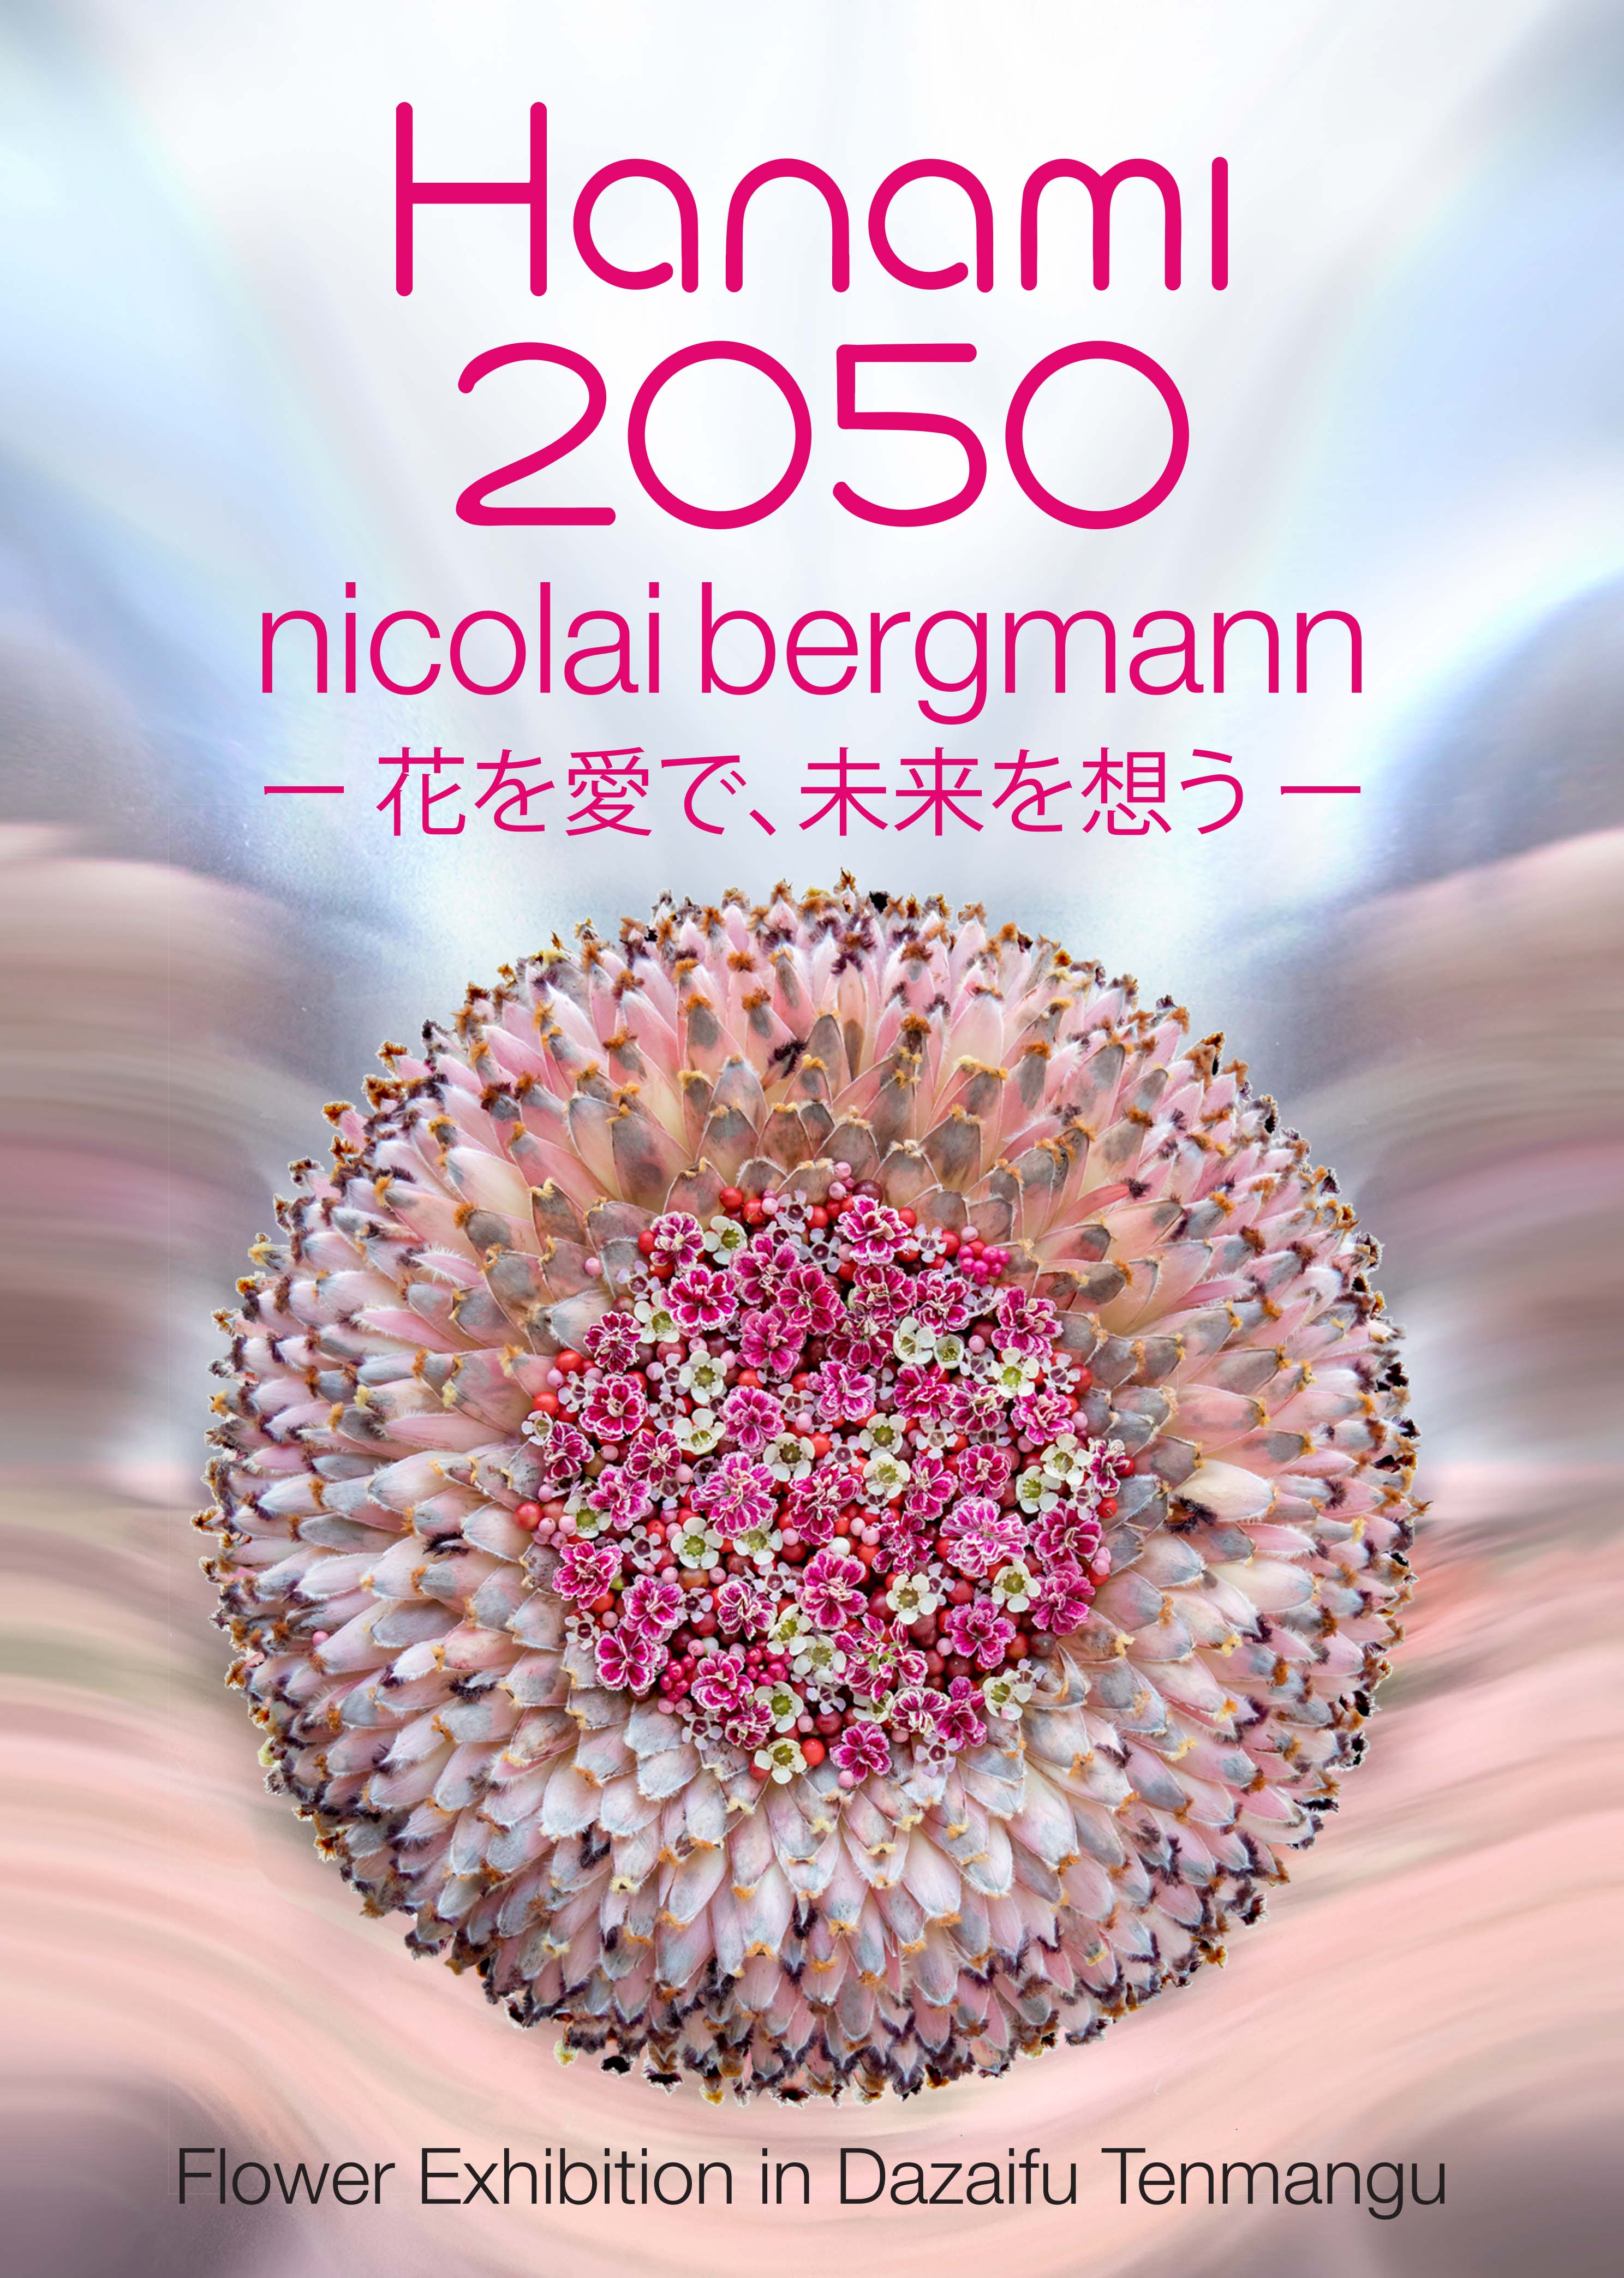 ニコライ バーグマンが2018年太宰府天満宮にて自身最大規模の展覧会「HANAMI 2050」を開催